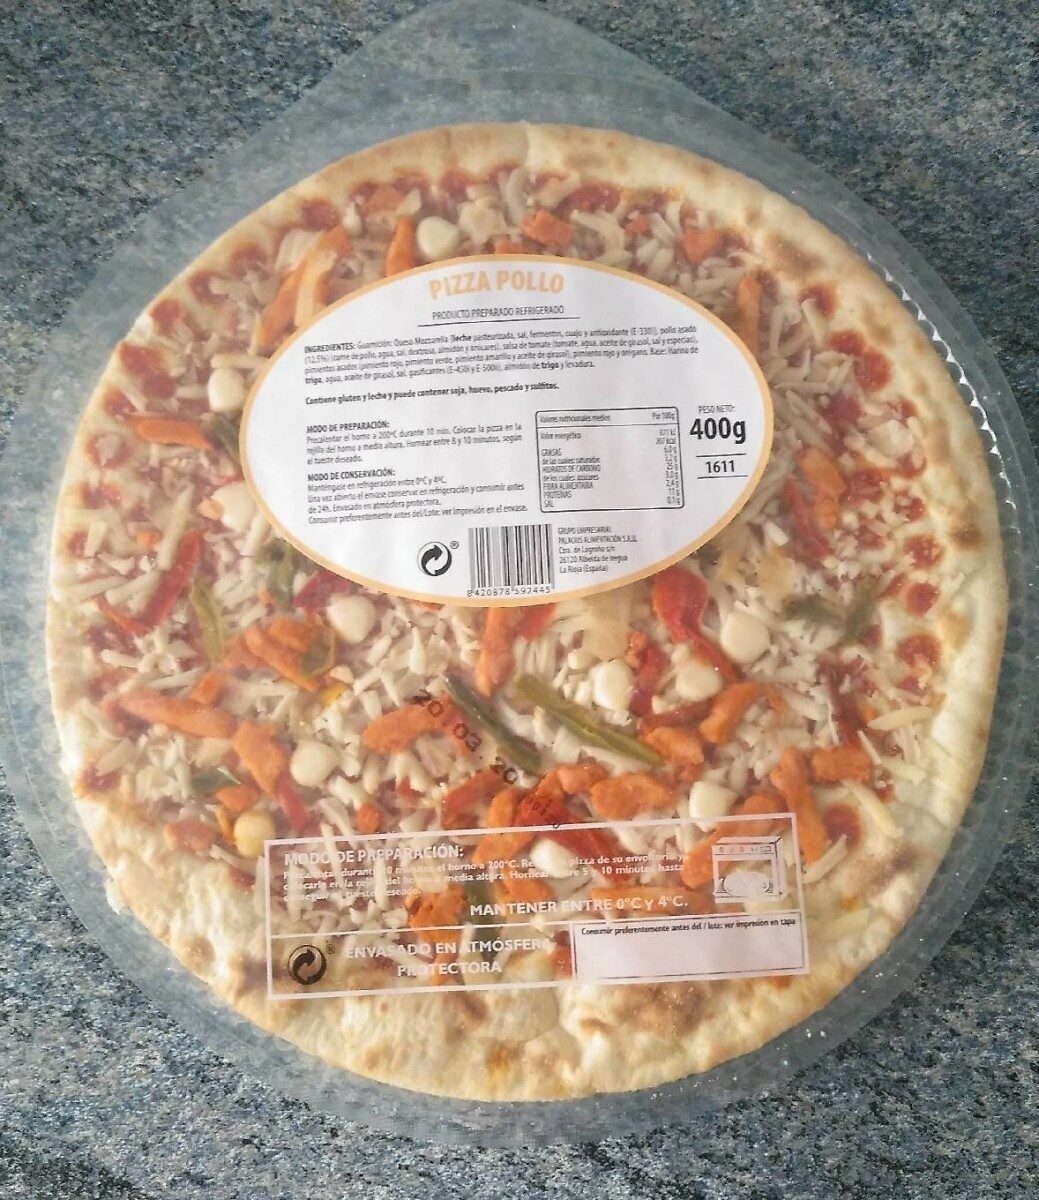 Pizza pollo - Product - es